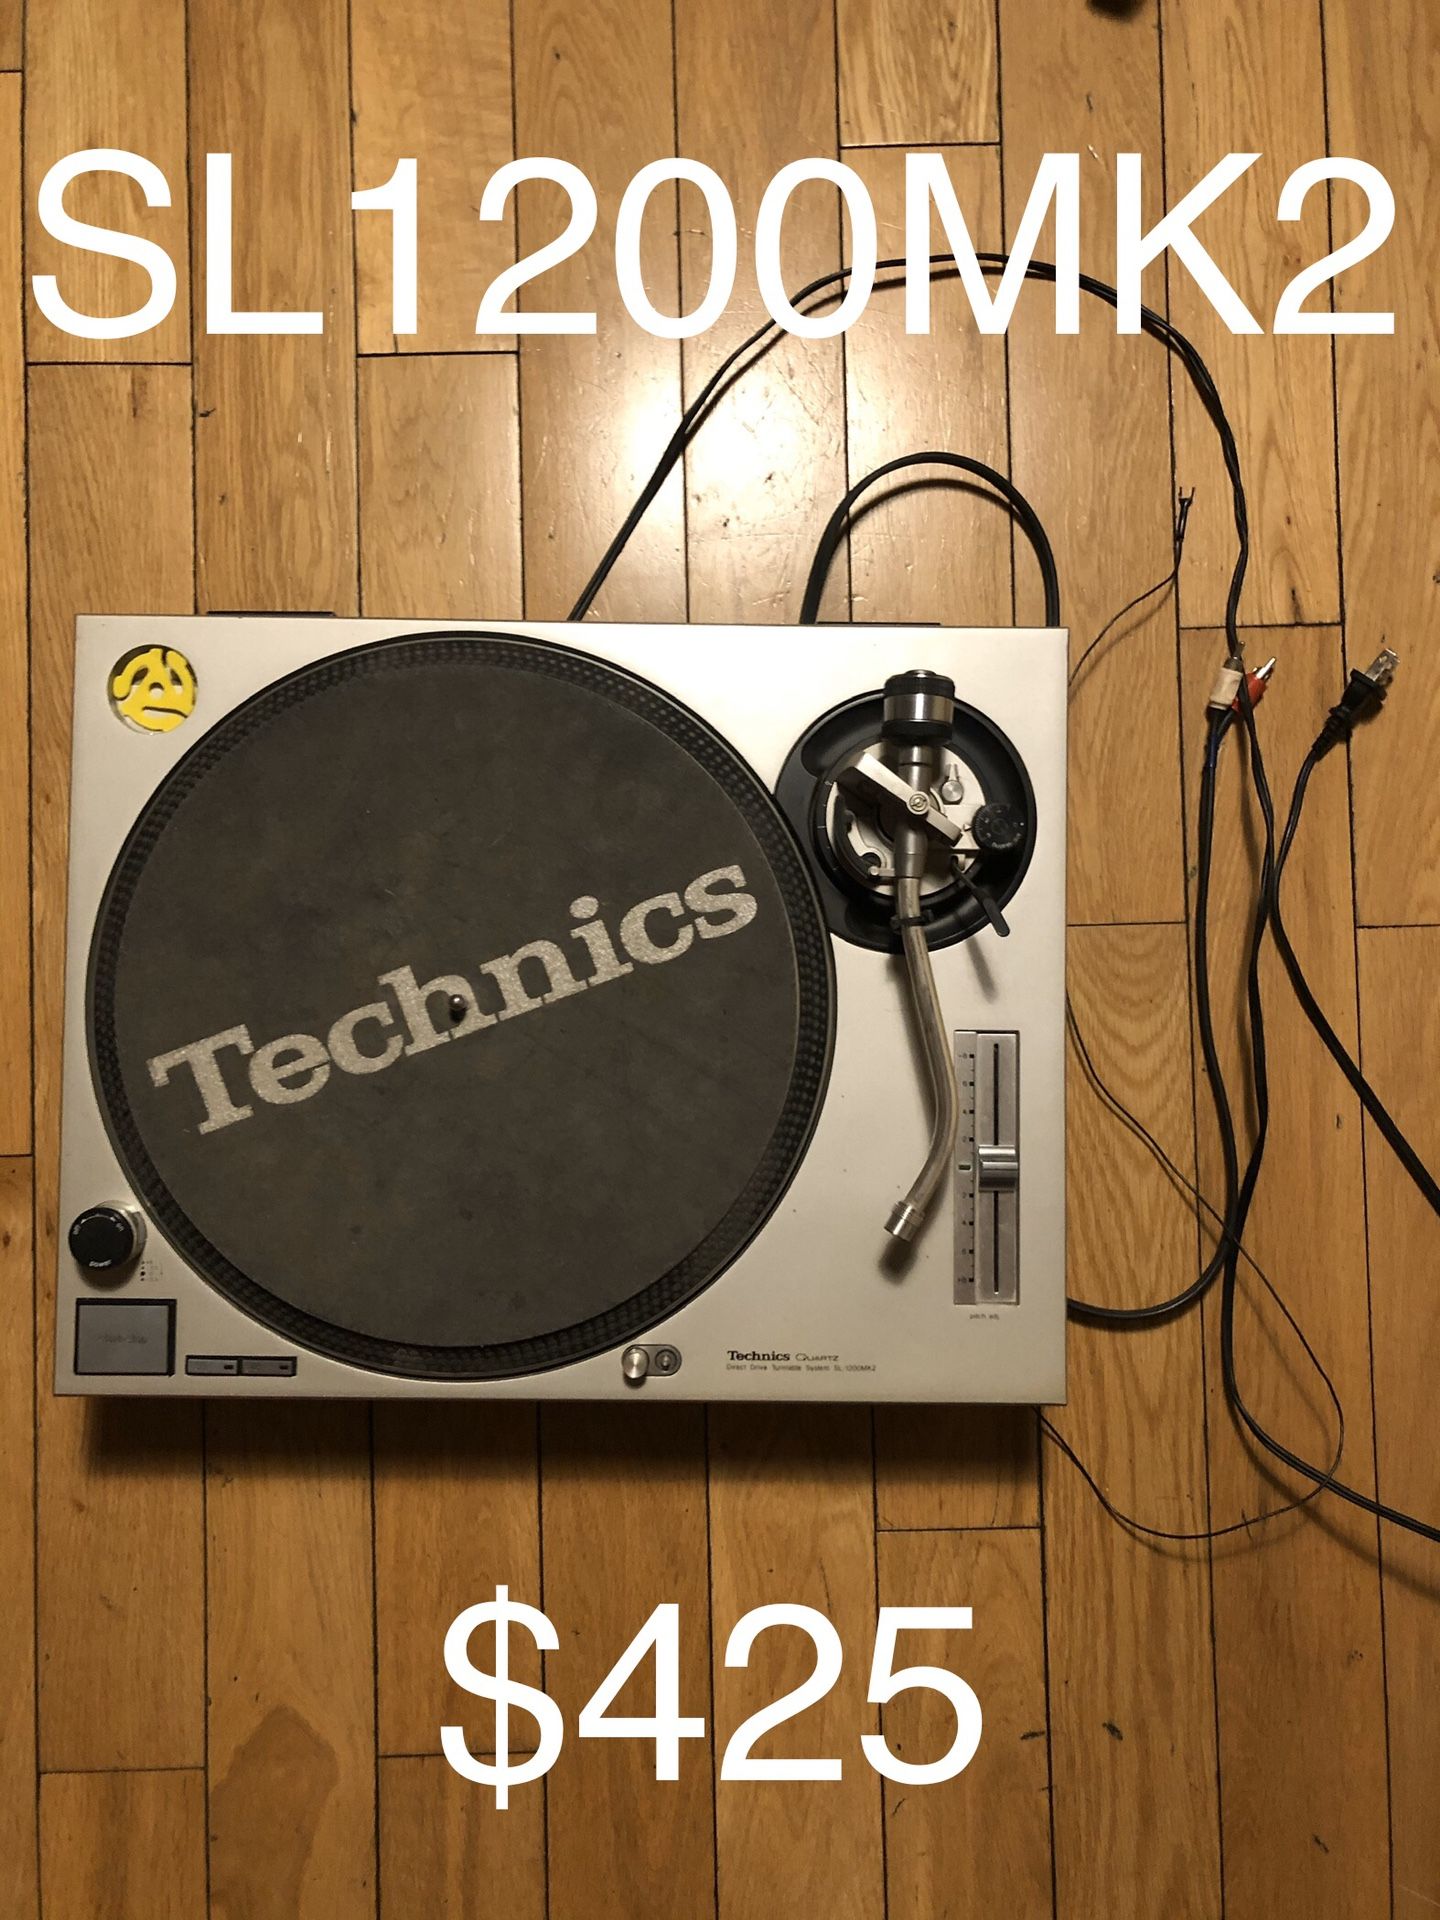 Technics SL1200 MK2 turntable